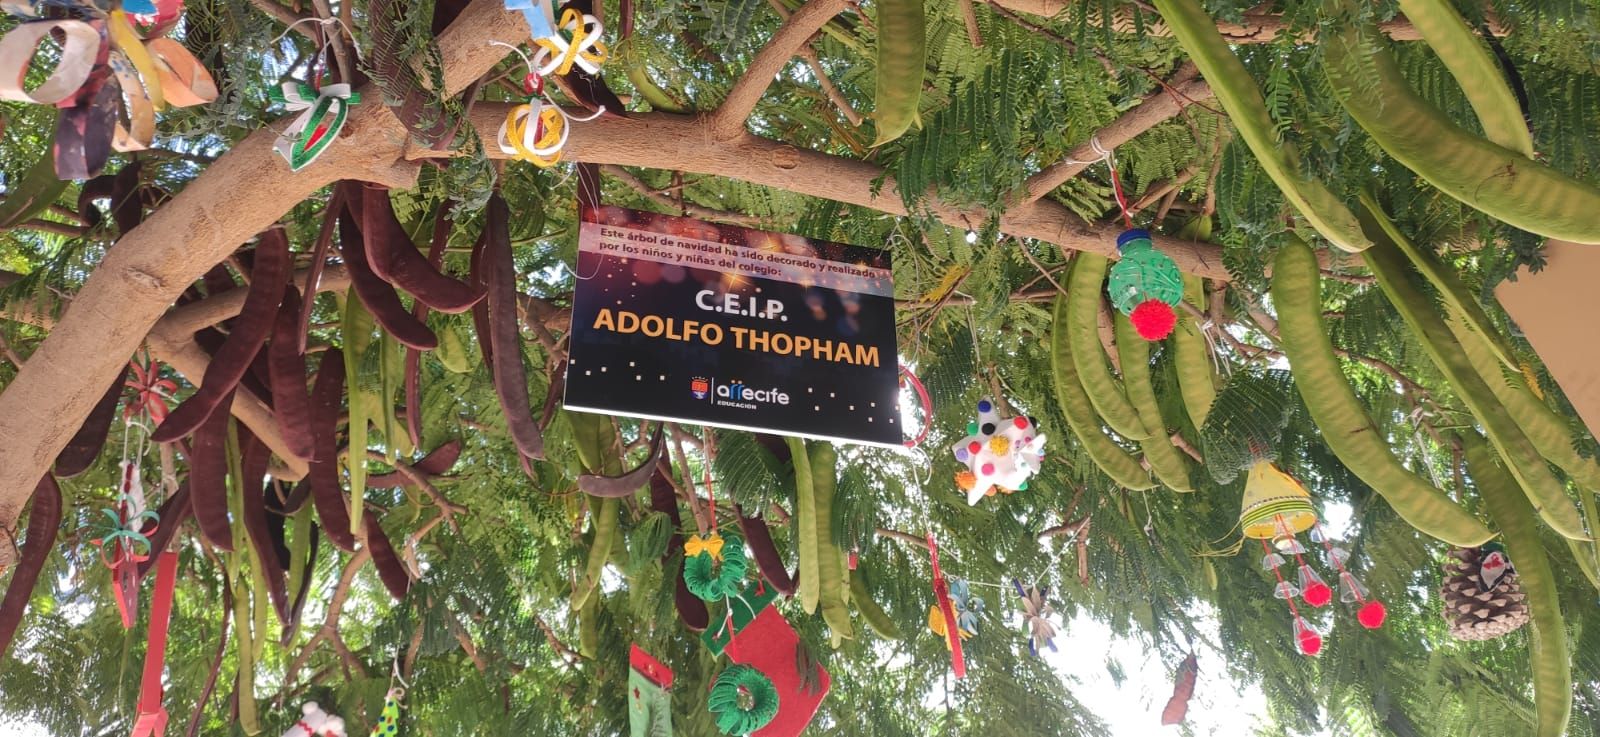 Escolares de Arrecife adornan los árboles para recibir a Papá Noel